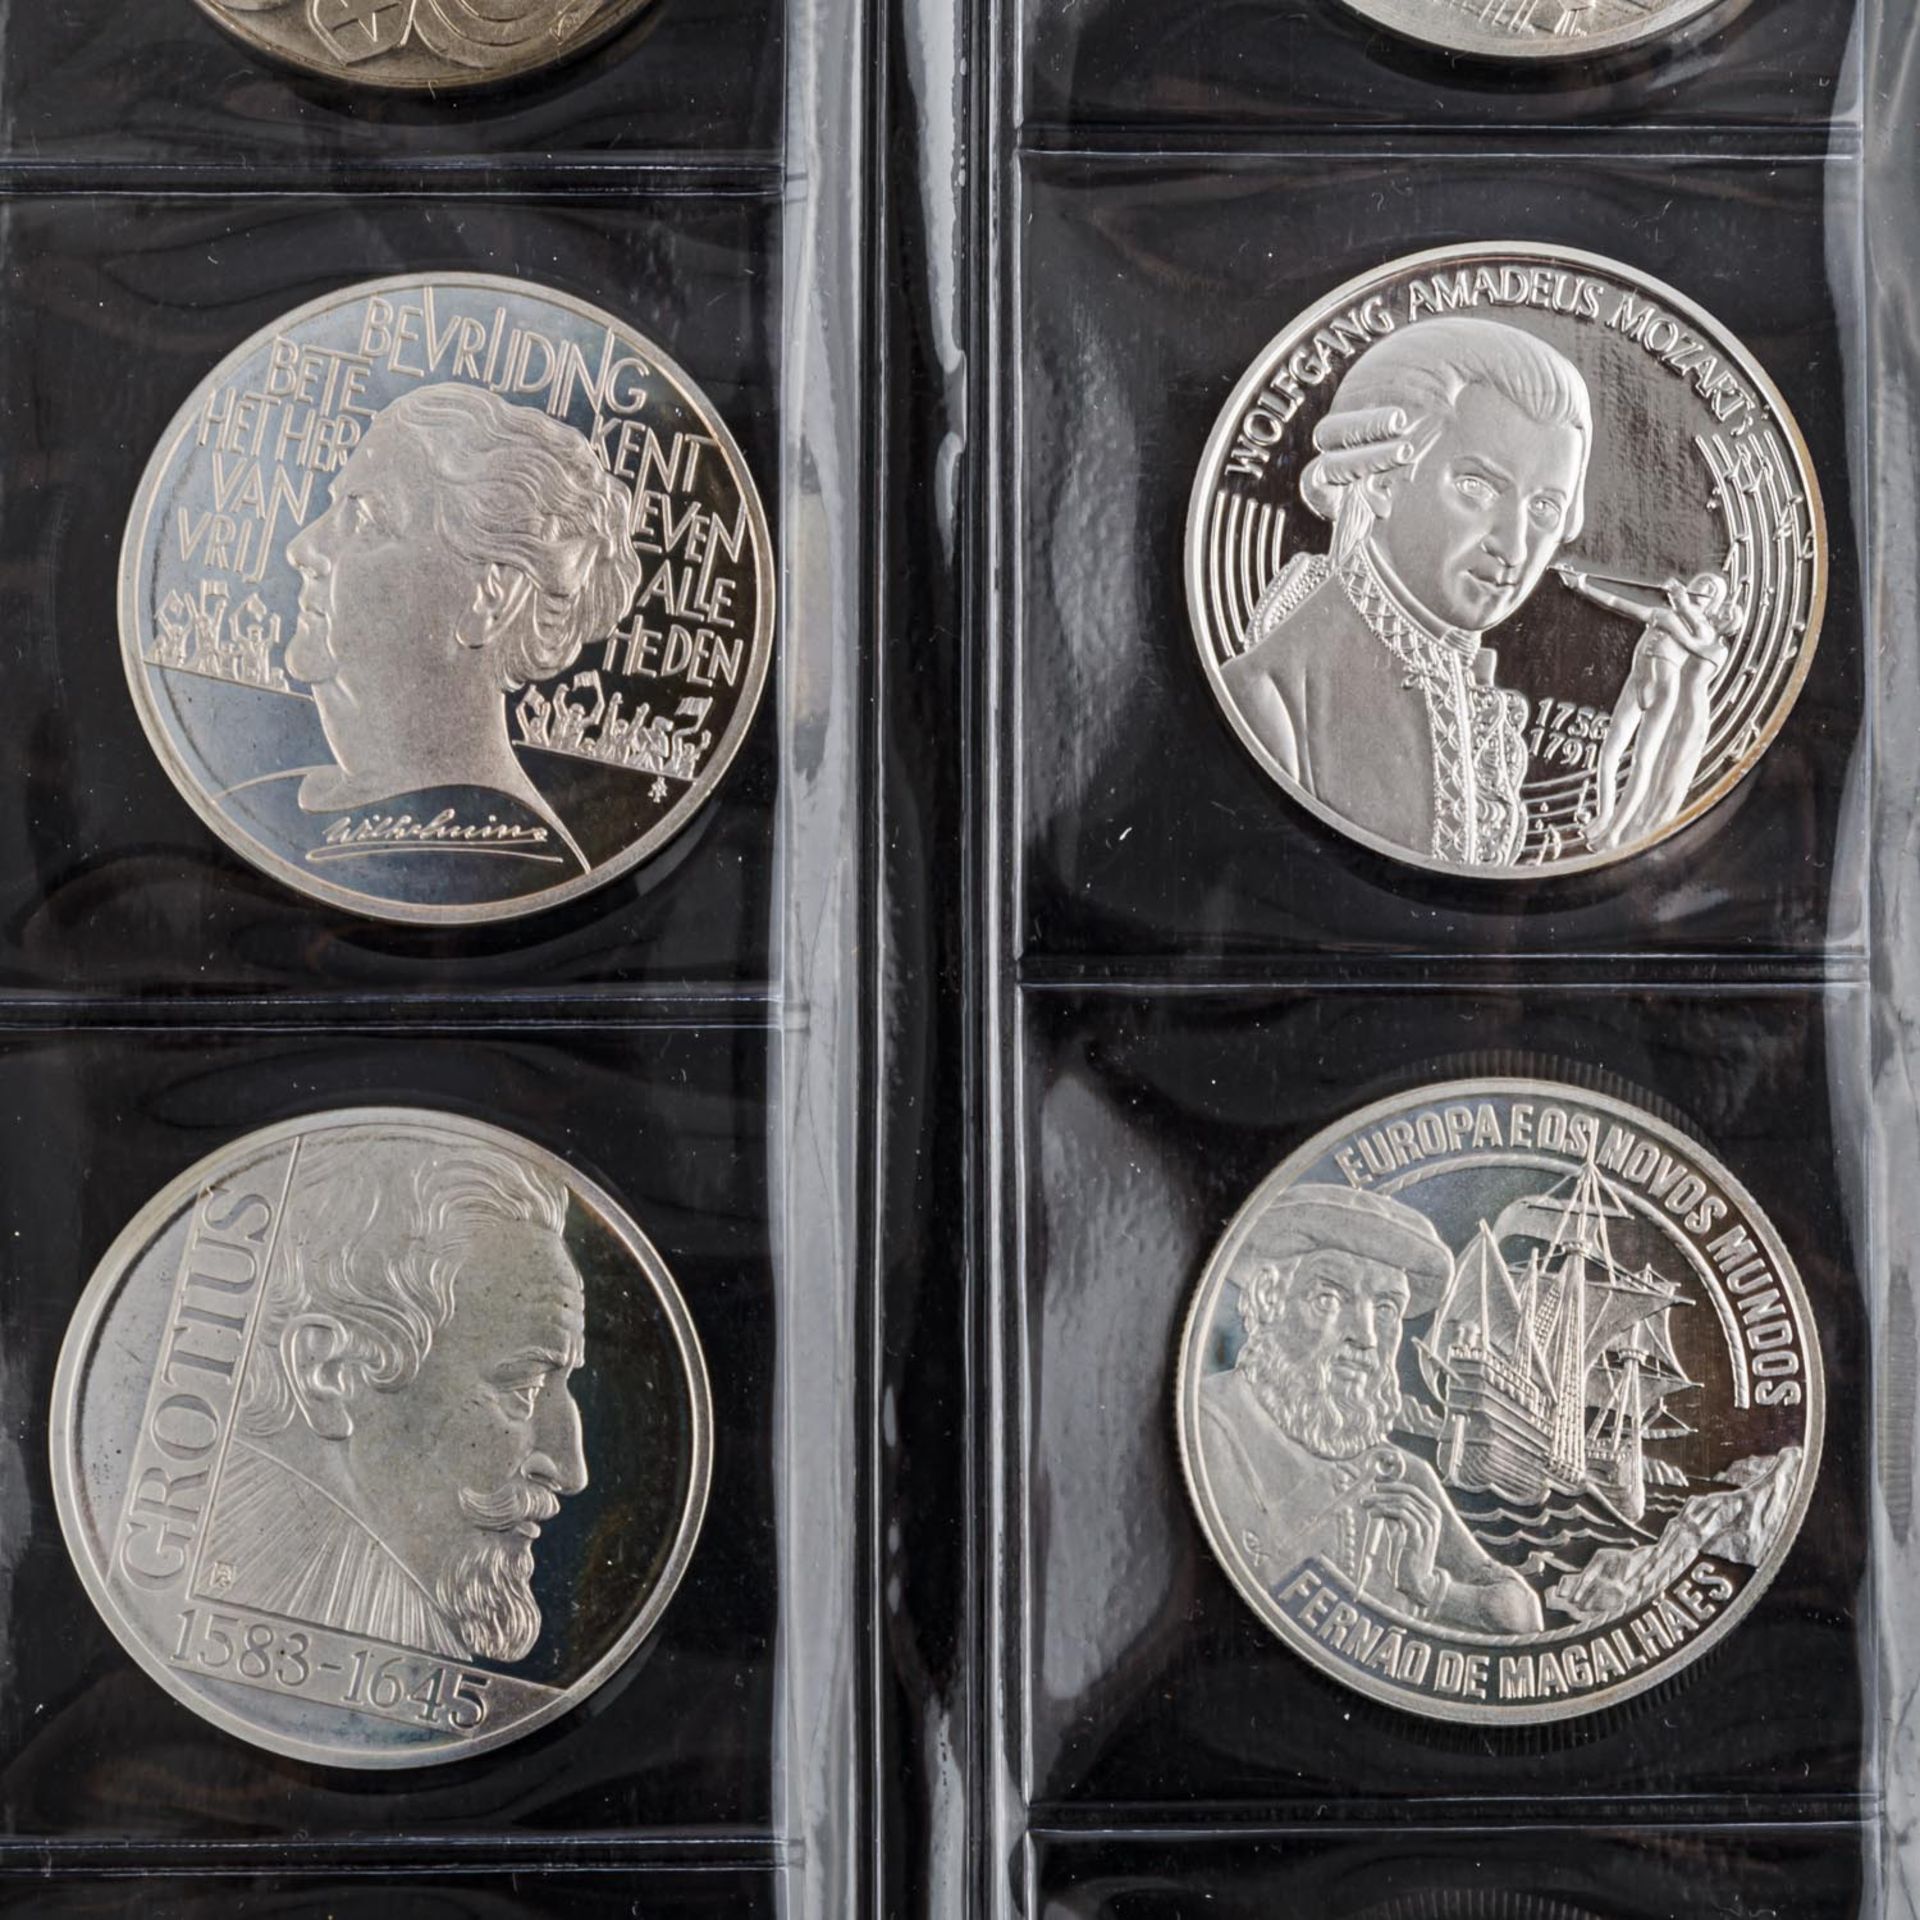 ECU Sammlung in überwiegend Silber und CuNi,gespickt mit wenigen EURO Münzen u.a. 5 Euro 2018 - Bild 4 aus 7